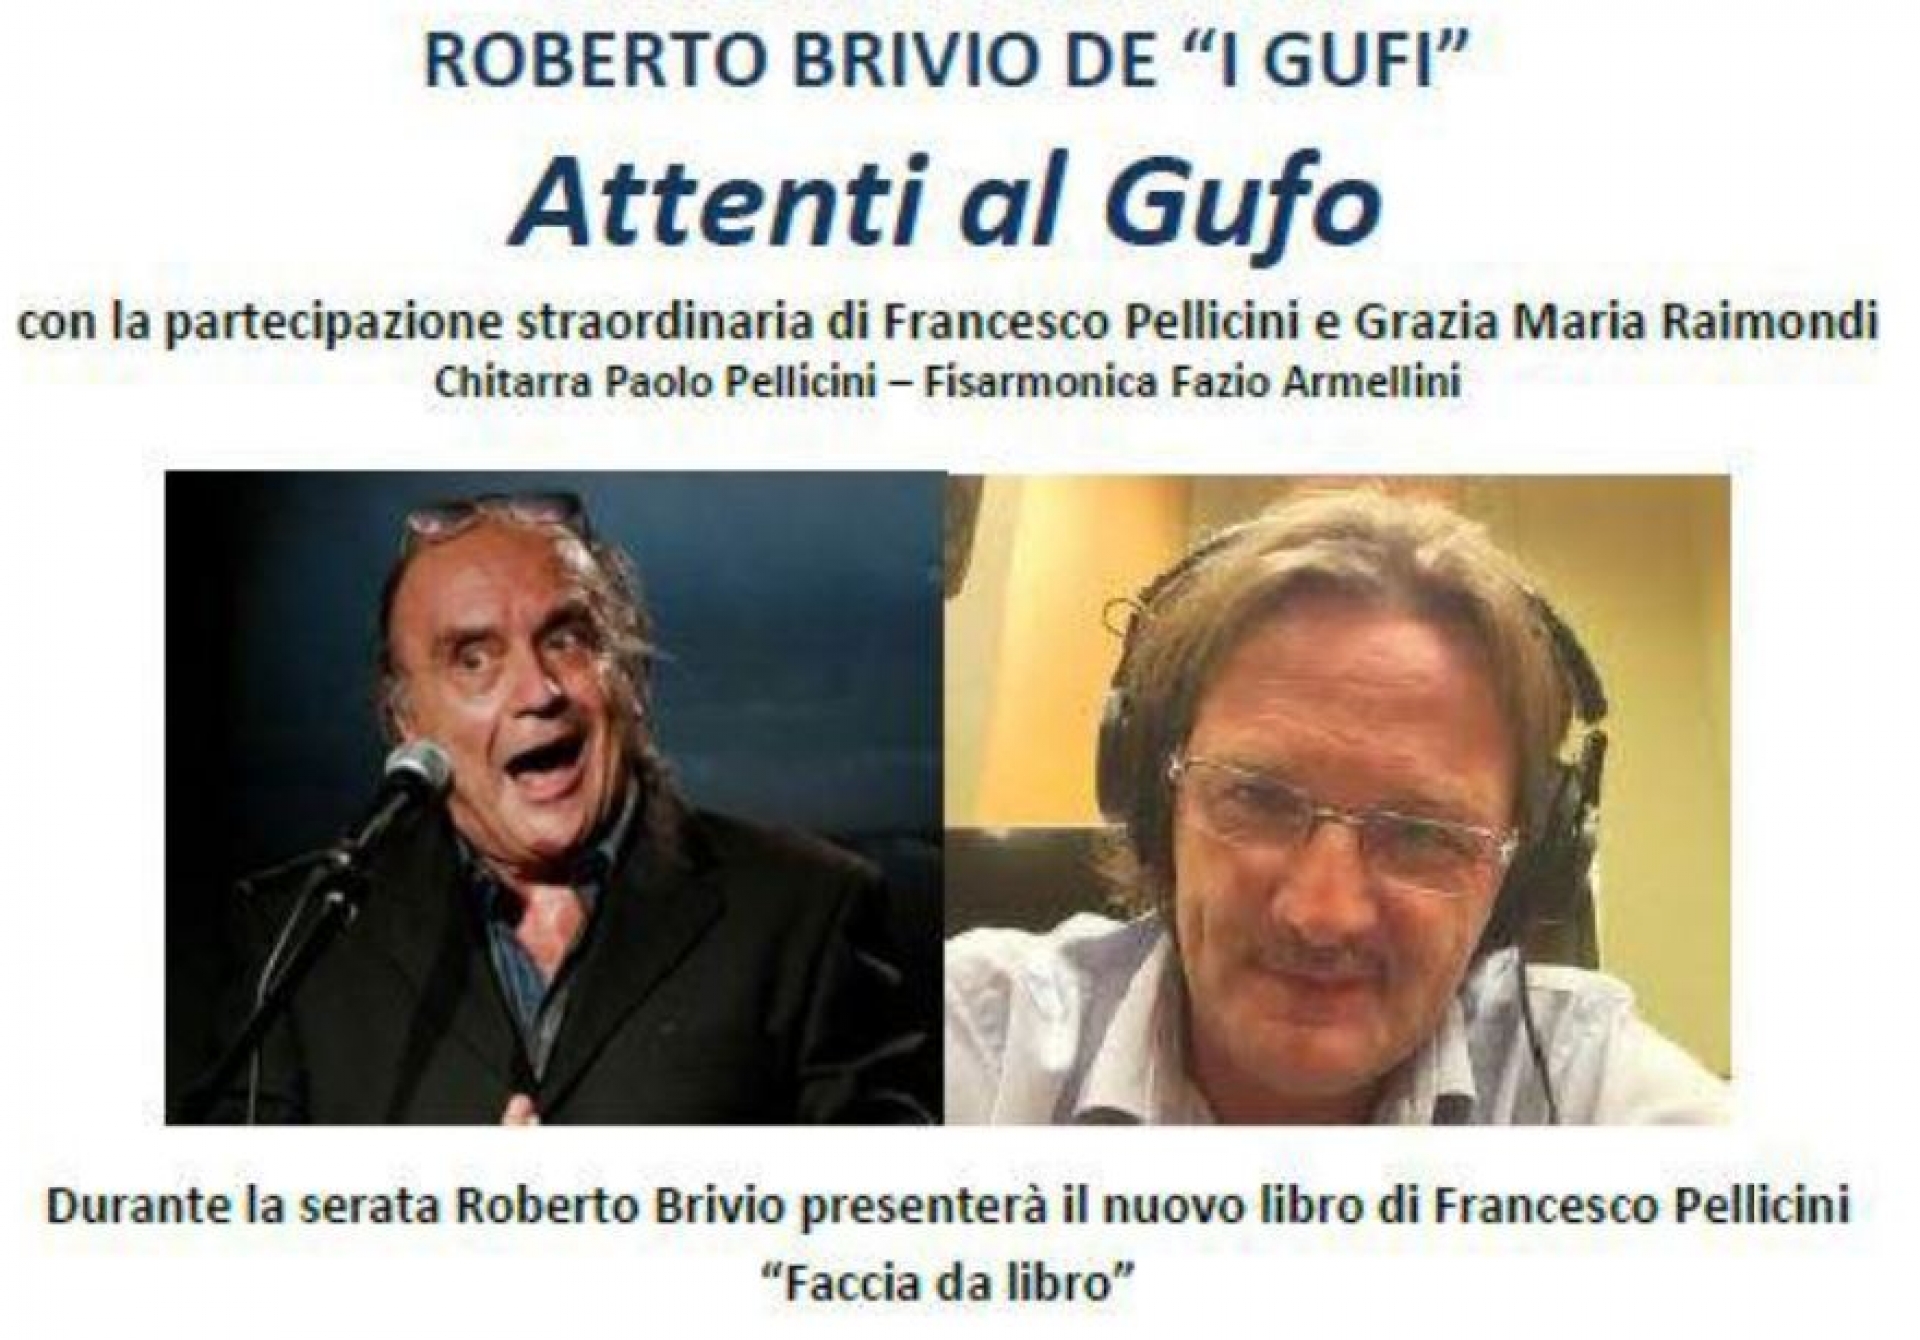 Roberto Brivio - “Attenti al Gufo”